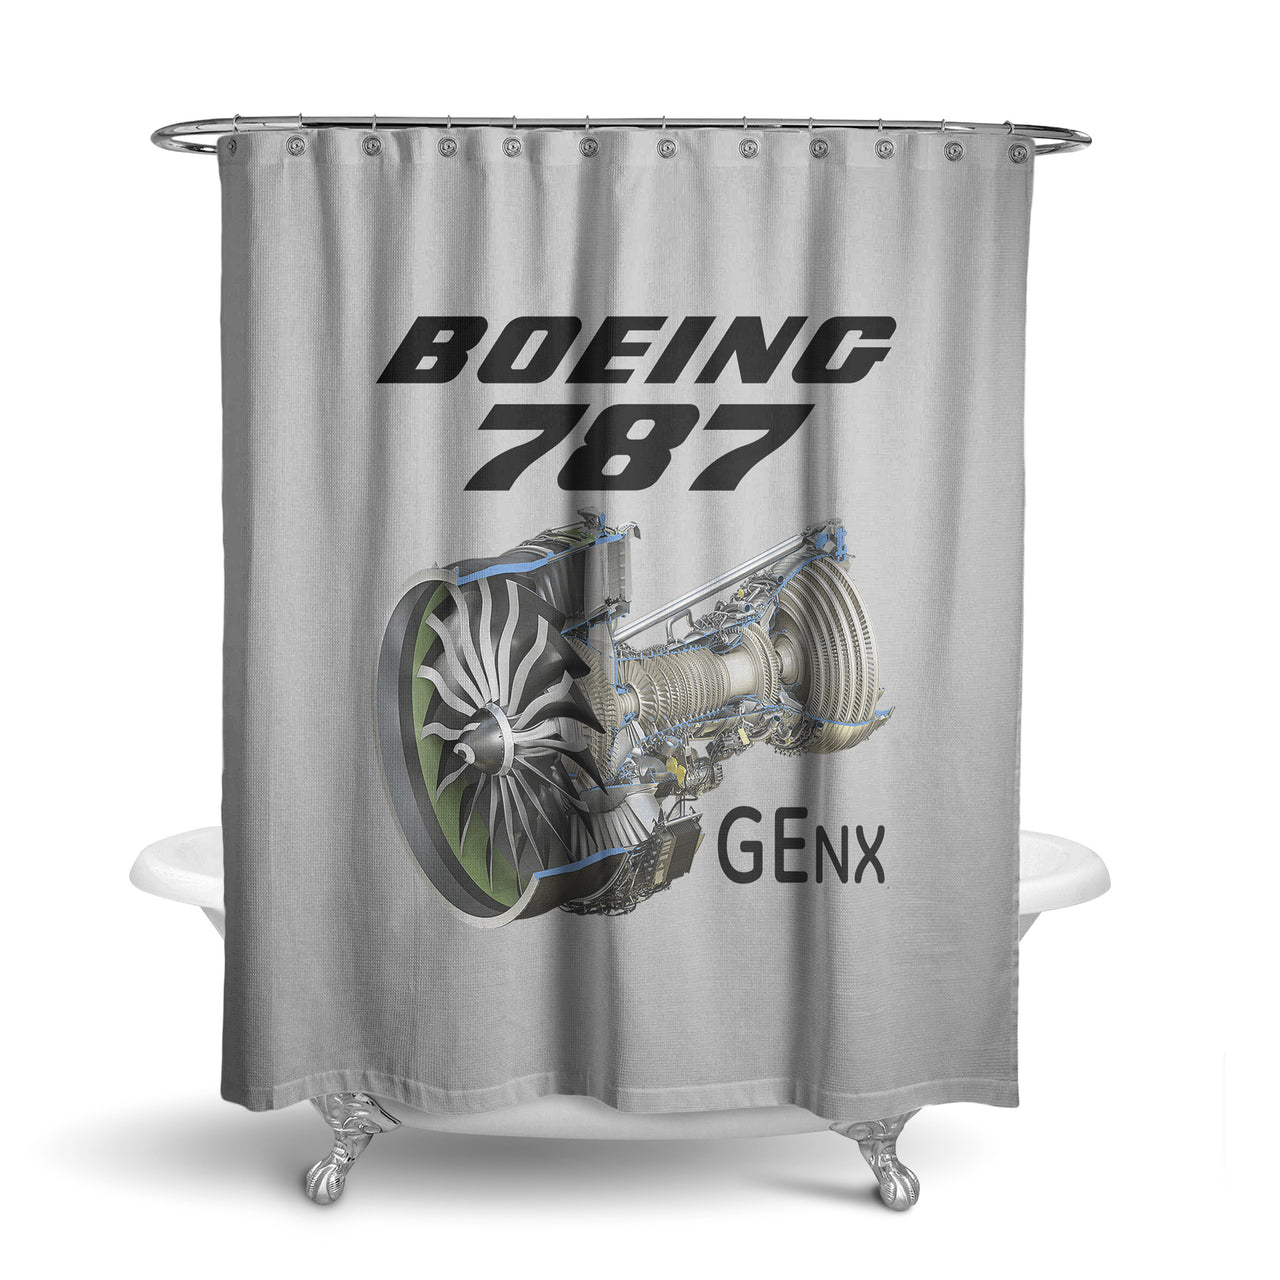 Boeing 787 & GENX Engine Designed Shower Curtains